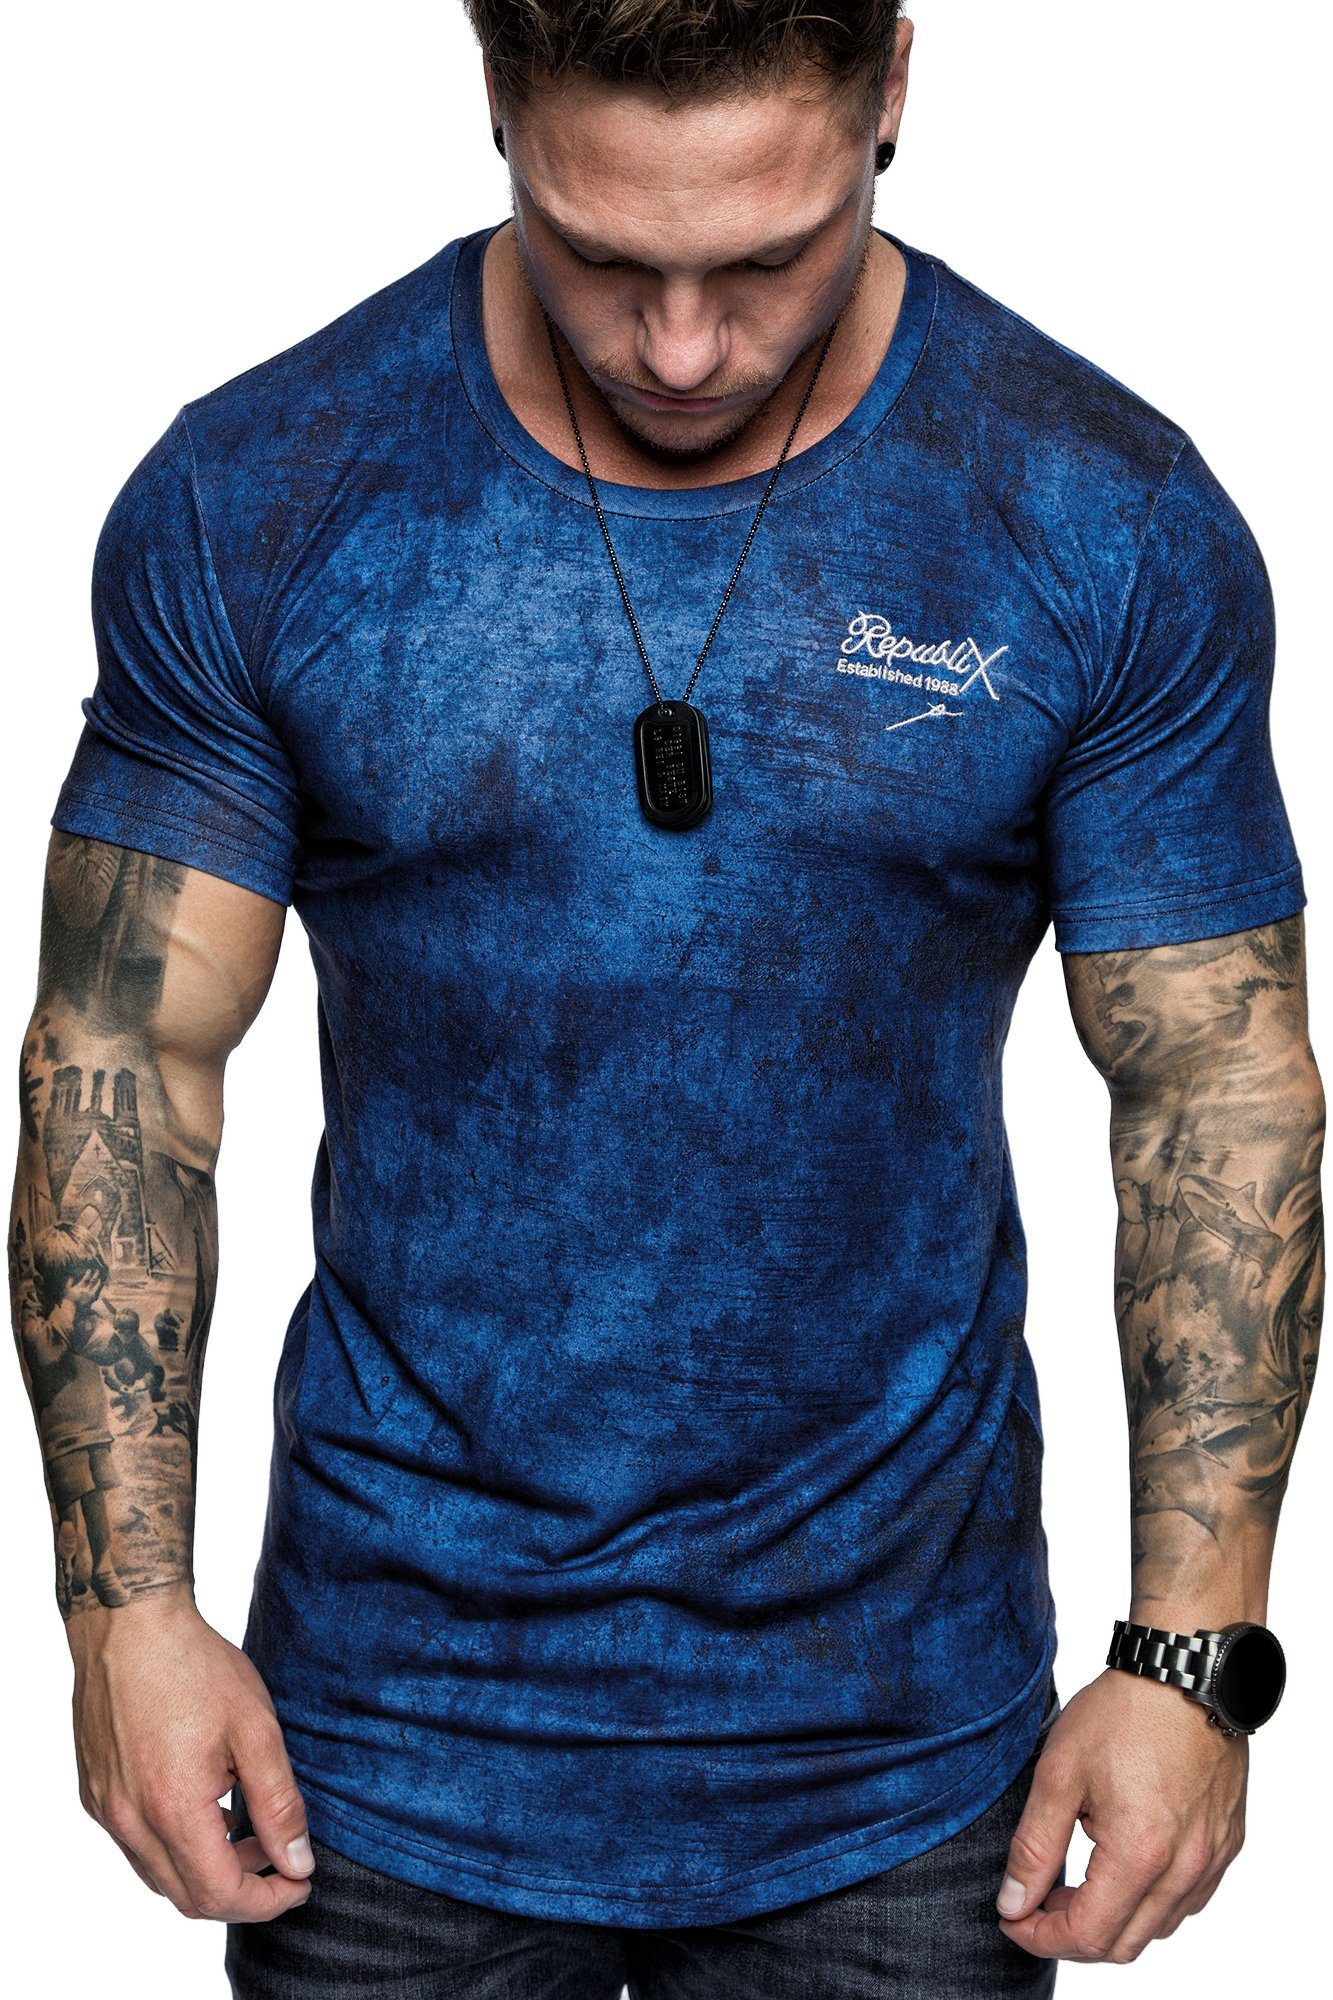 REPUBLIX T-Shirt Design Herren Rundhalsausschnitt Neck Navyblau Marble Crew Oversize JEFF Shirt mit